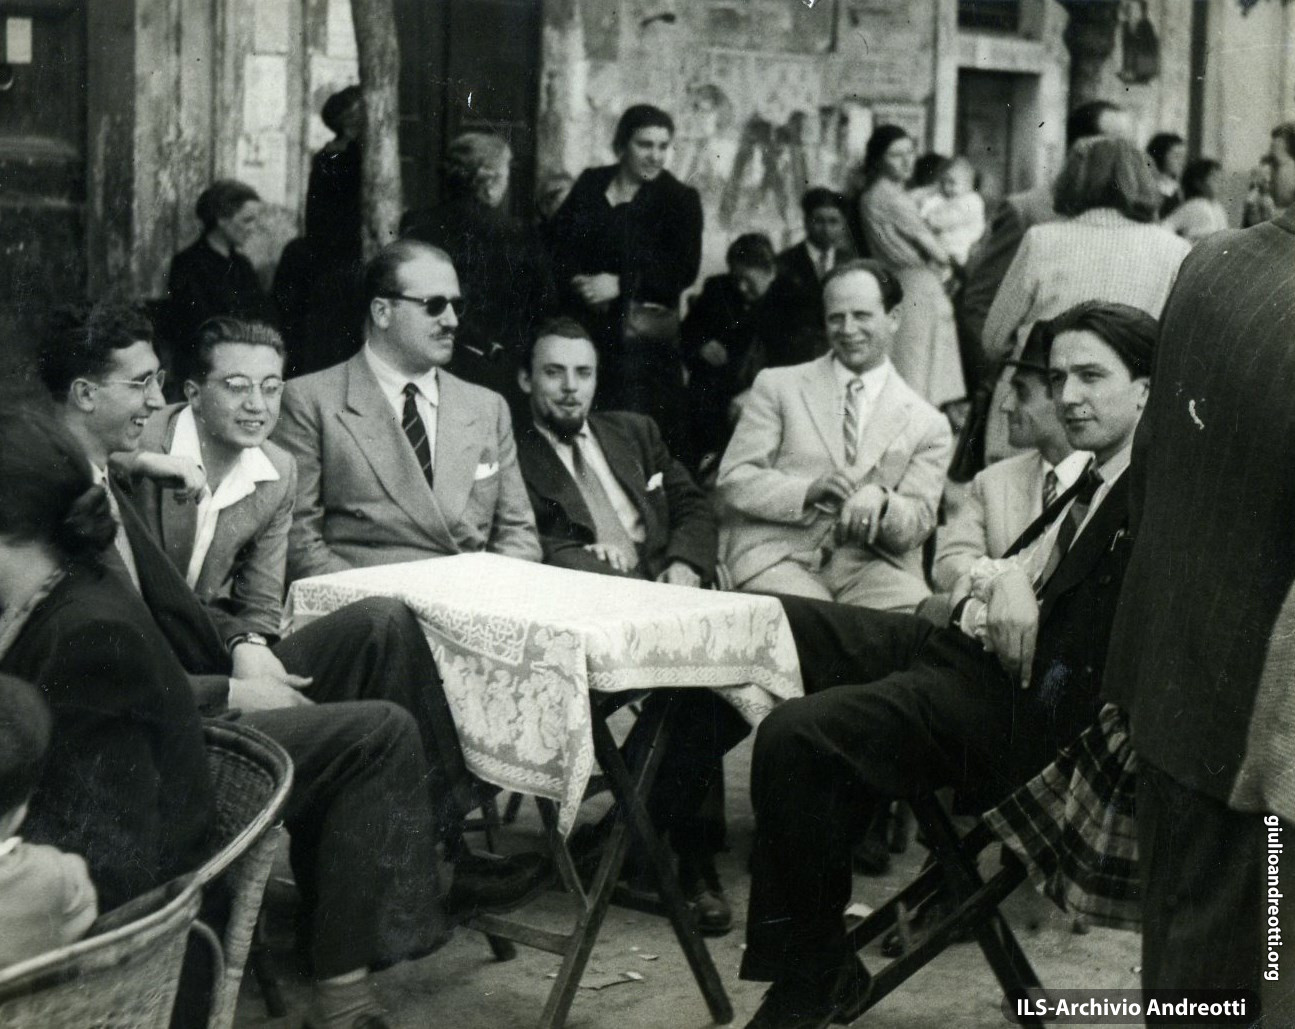 1940. Andreotti con gli amici al caffé a Castel Gandolfo (il secondo da sinisstra è Giorgio Ceccherini).